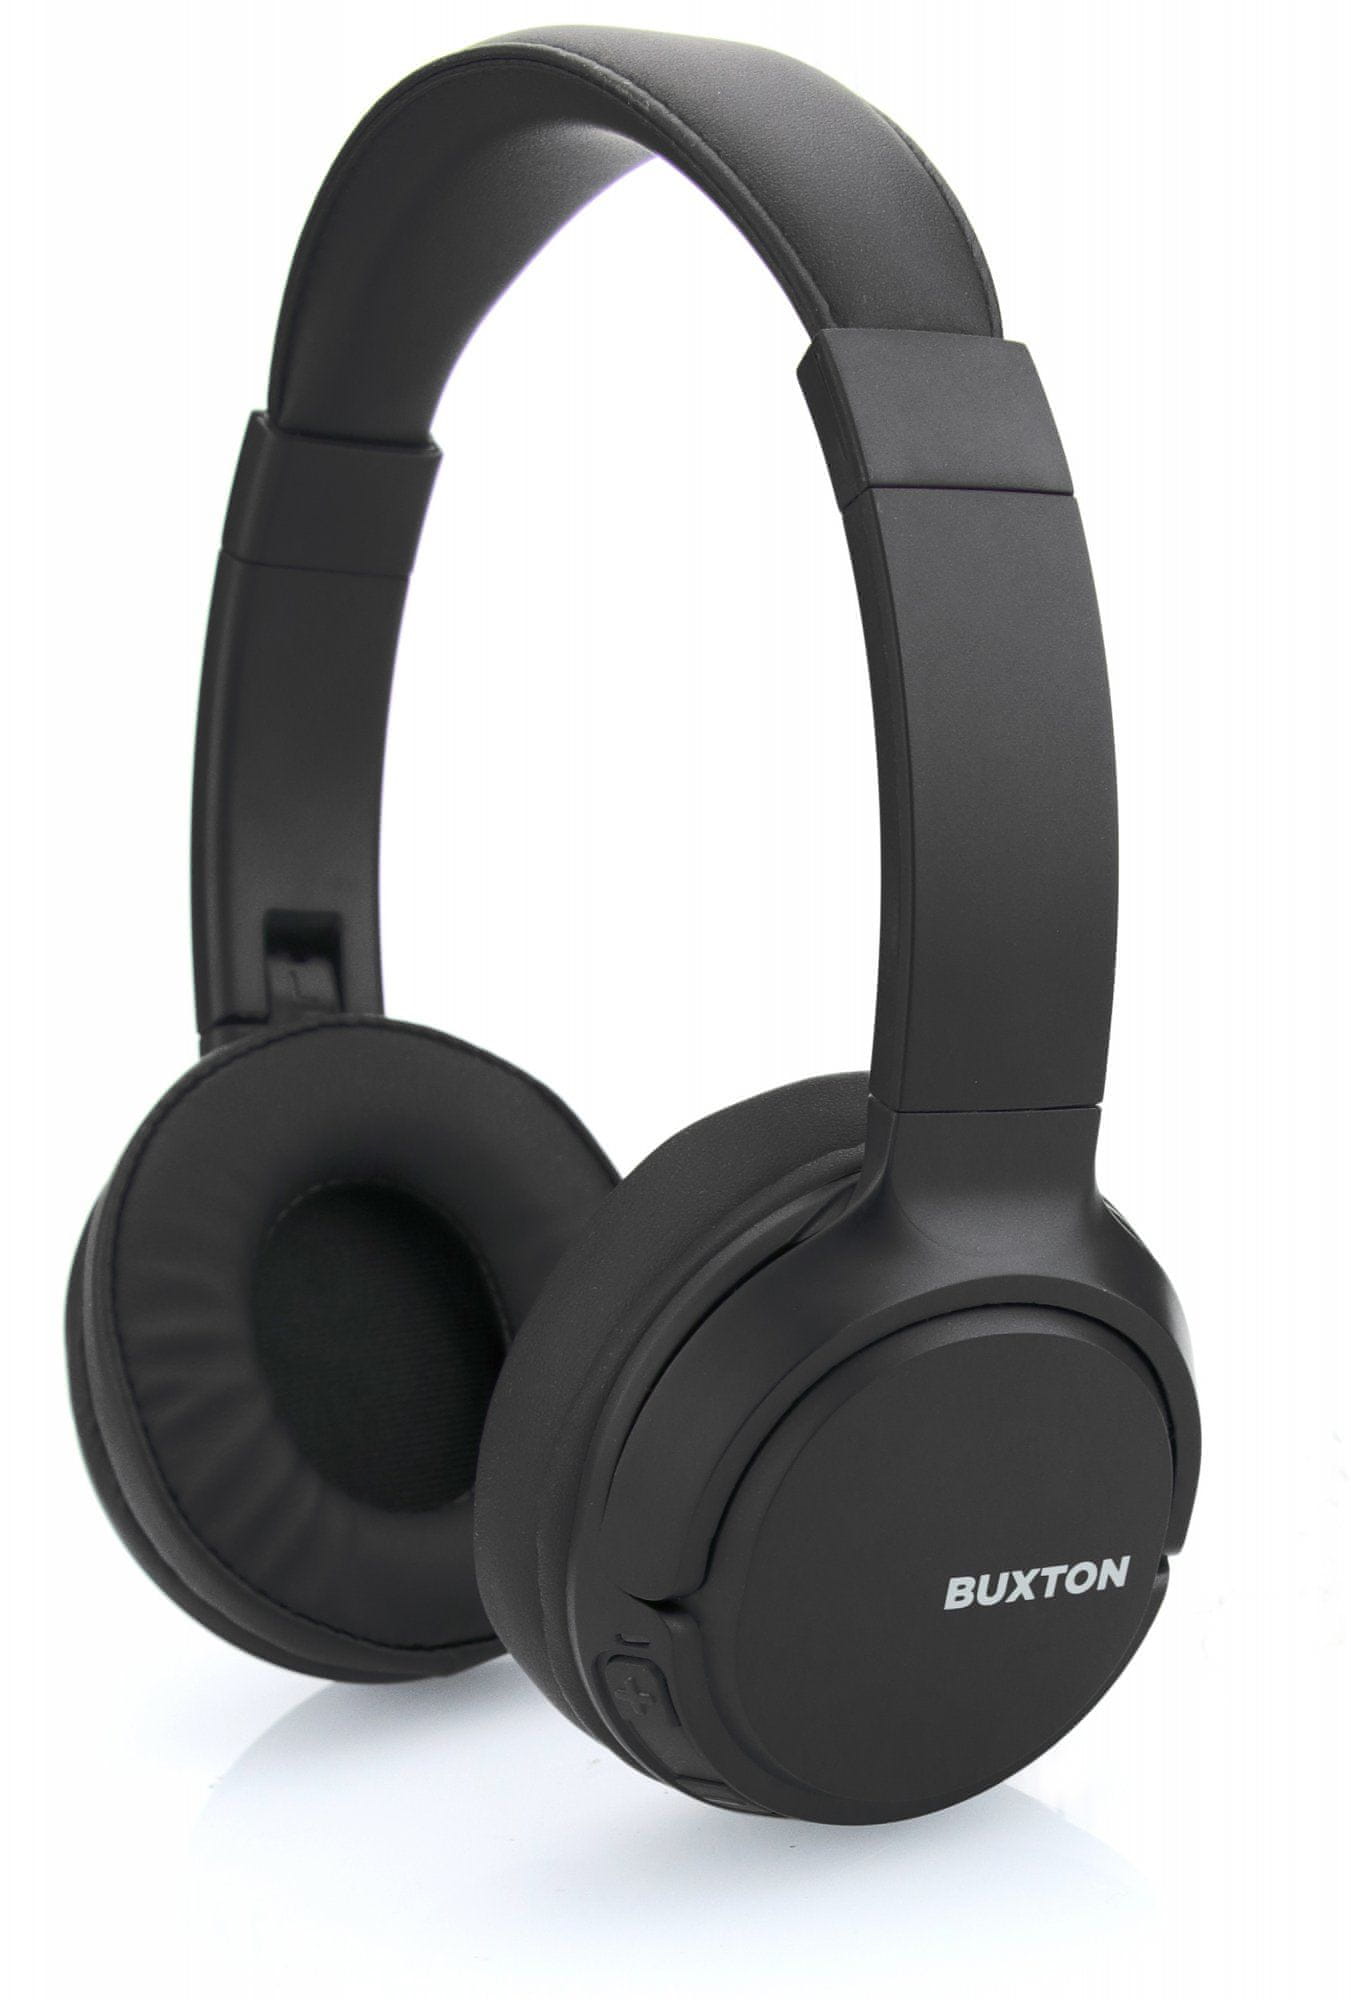  sodobna brezžična tehnologija Bluetooth buxton bhp 7300 udobne lahke slušalke indikatorji stanja USB polnjenje dolga življenjska doba baterije 